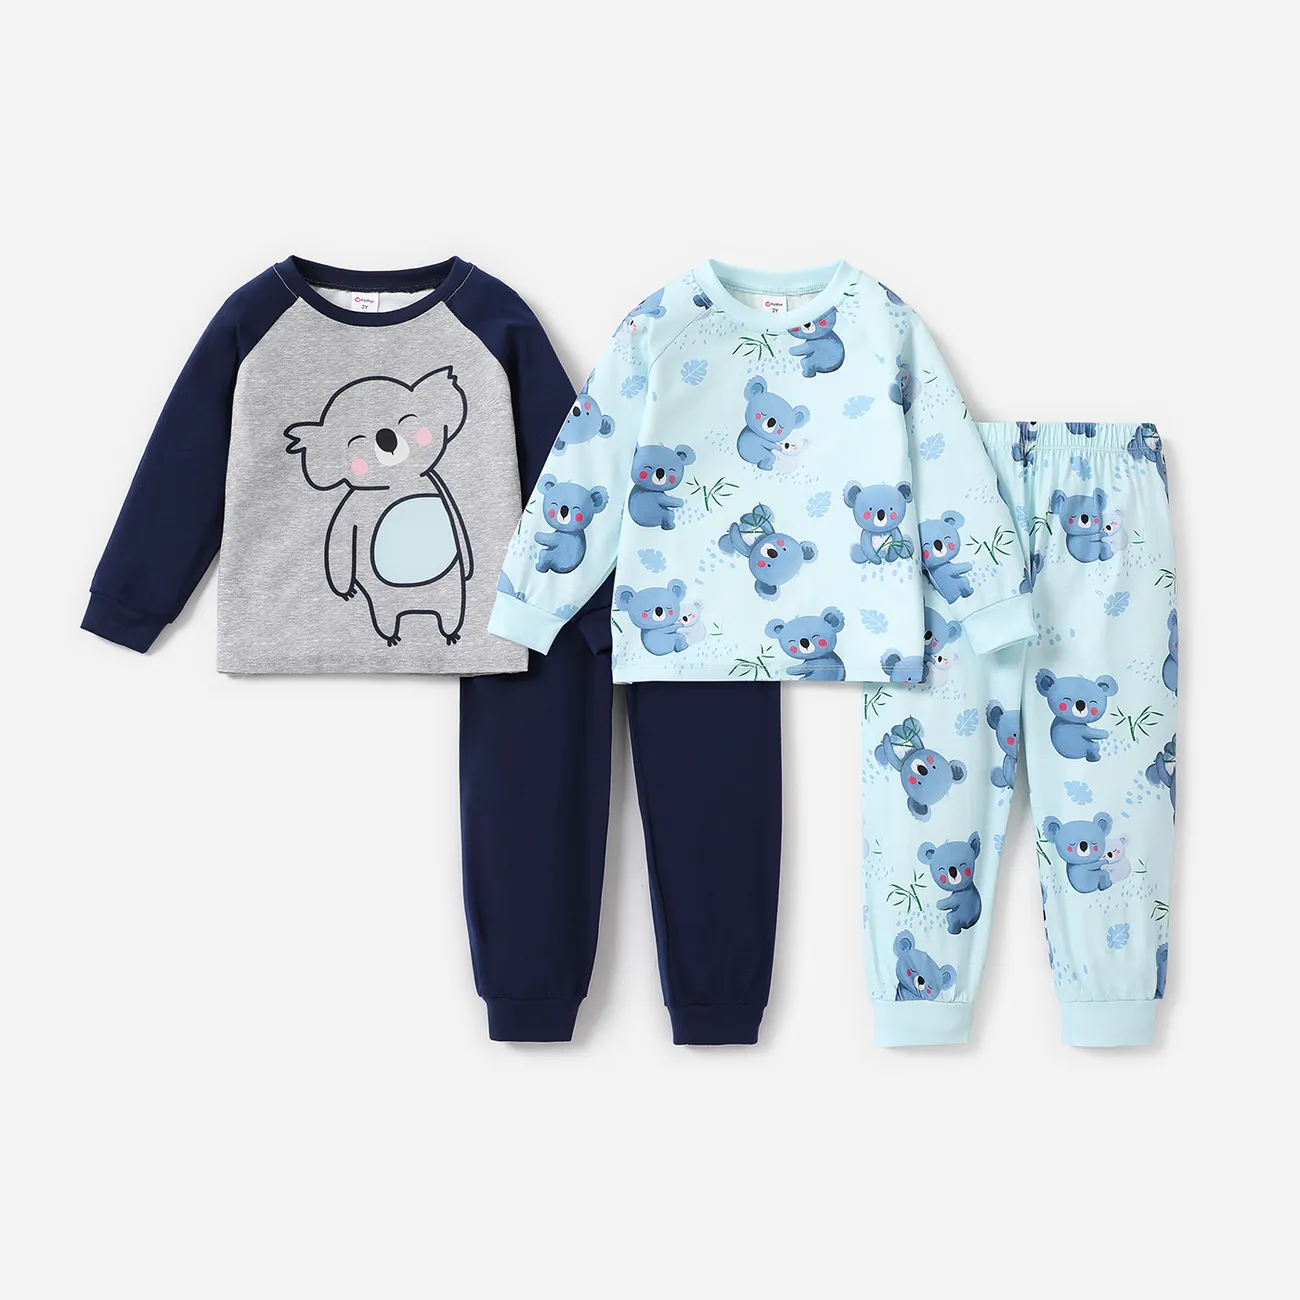 2 pièces Enfant en bas âge Garçon Couture de tissus Enfantin Koala Pyjamas Bleu Clair big image 1